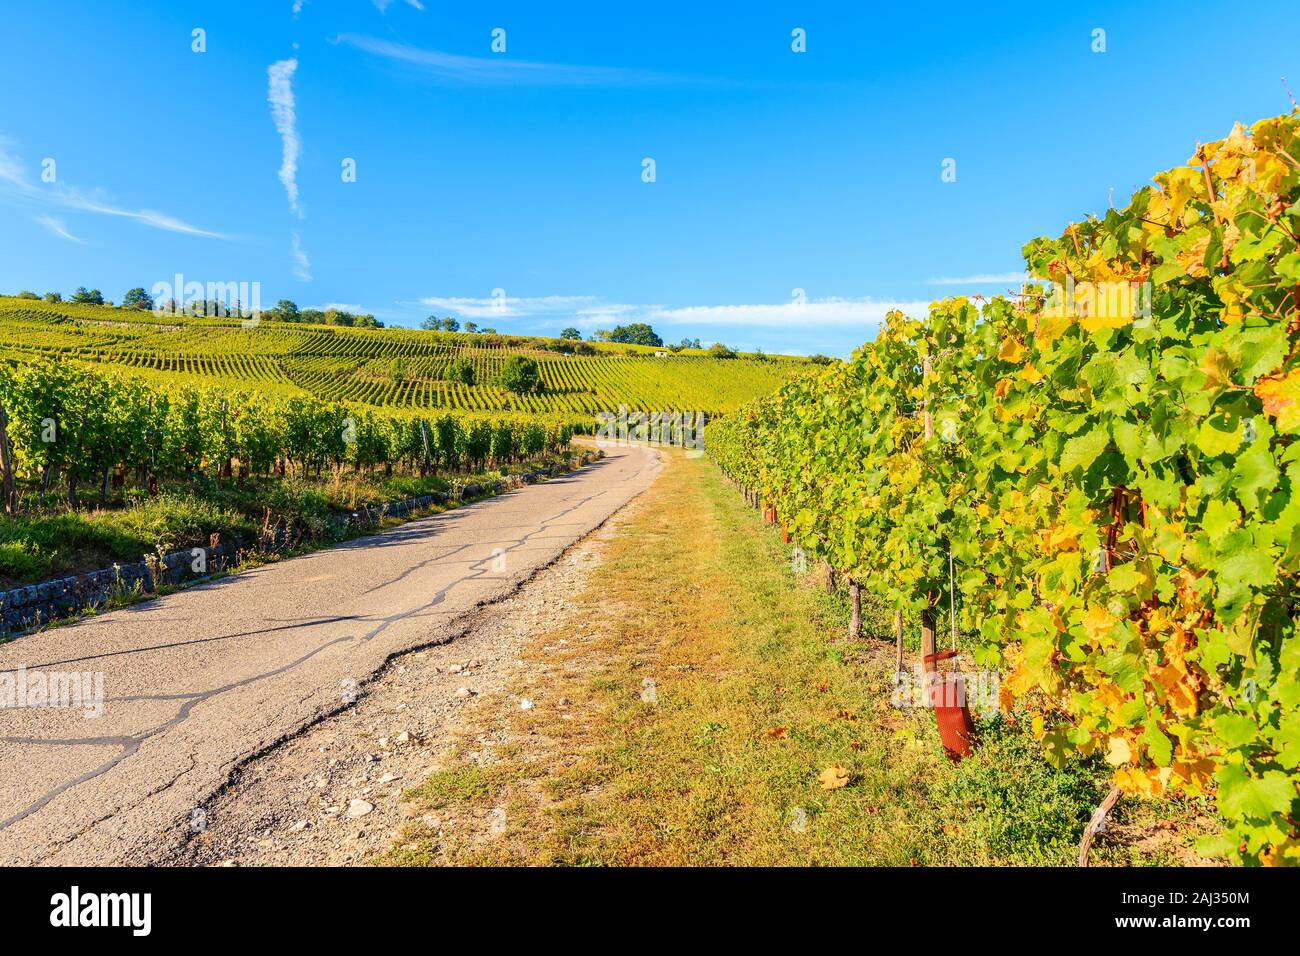 Vista de la carretera y viñedos en Riquewihr village, Ruta del Vino de Alsacia, Francia Foto de stock